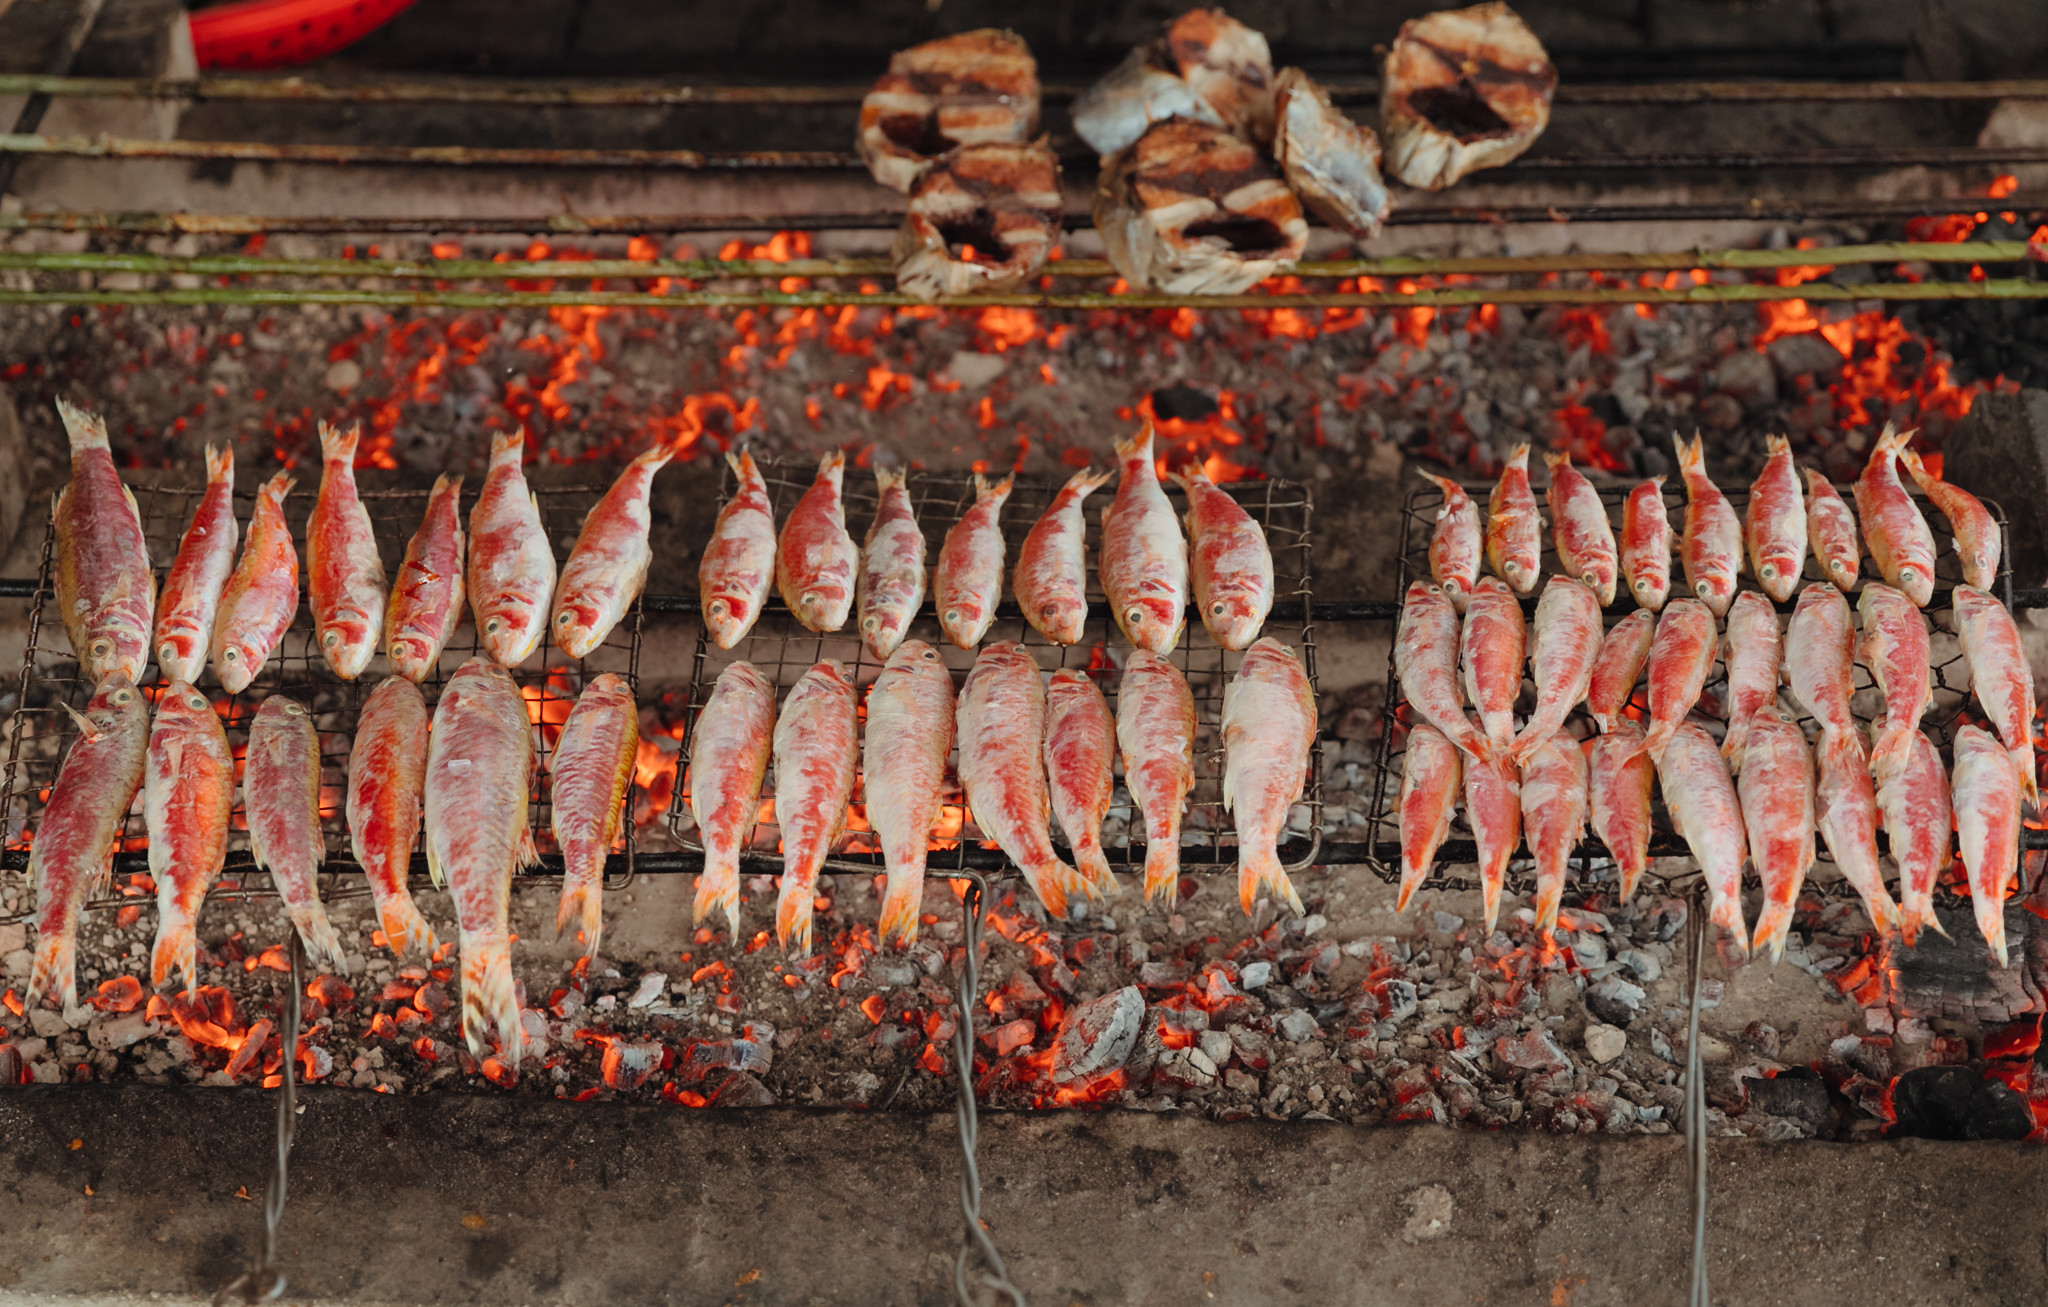 Trong đó các món ăn như cá nướng, mực nháy, gỏi tôm và rất nhiều loại hải sản mang đặc trưng riêng của vùng biển xứ Nghệ. Đây là những điểm thú vị mà thực khách không nên bỏ lỡ khi về với Cửa Lò. Ảnh: Đức Anh